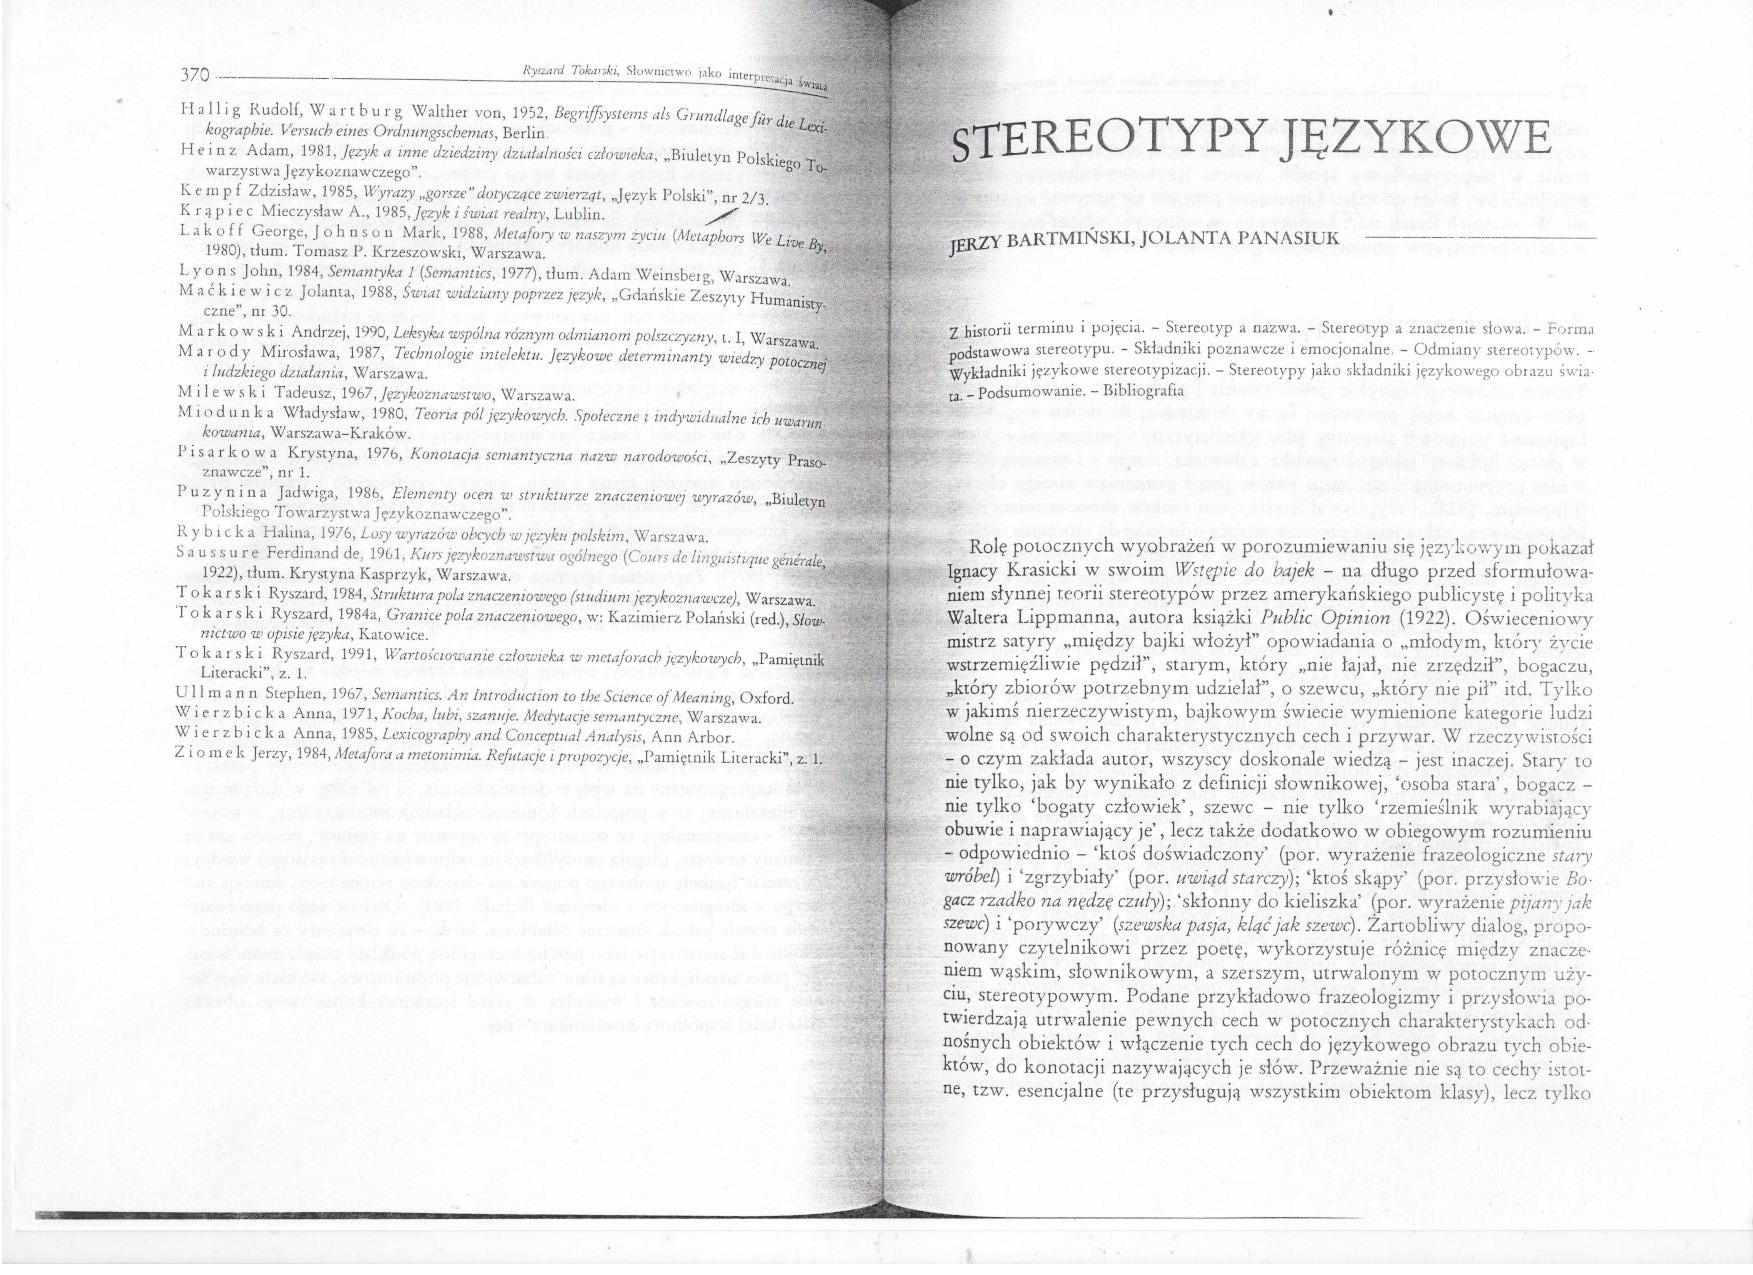 Bartmiński J., Panasiuk J. Stereotypy językowe - Stereotypy1.jpg